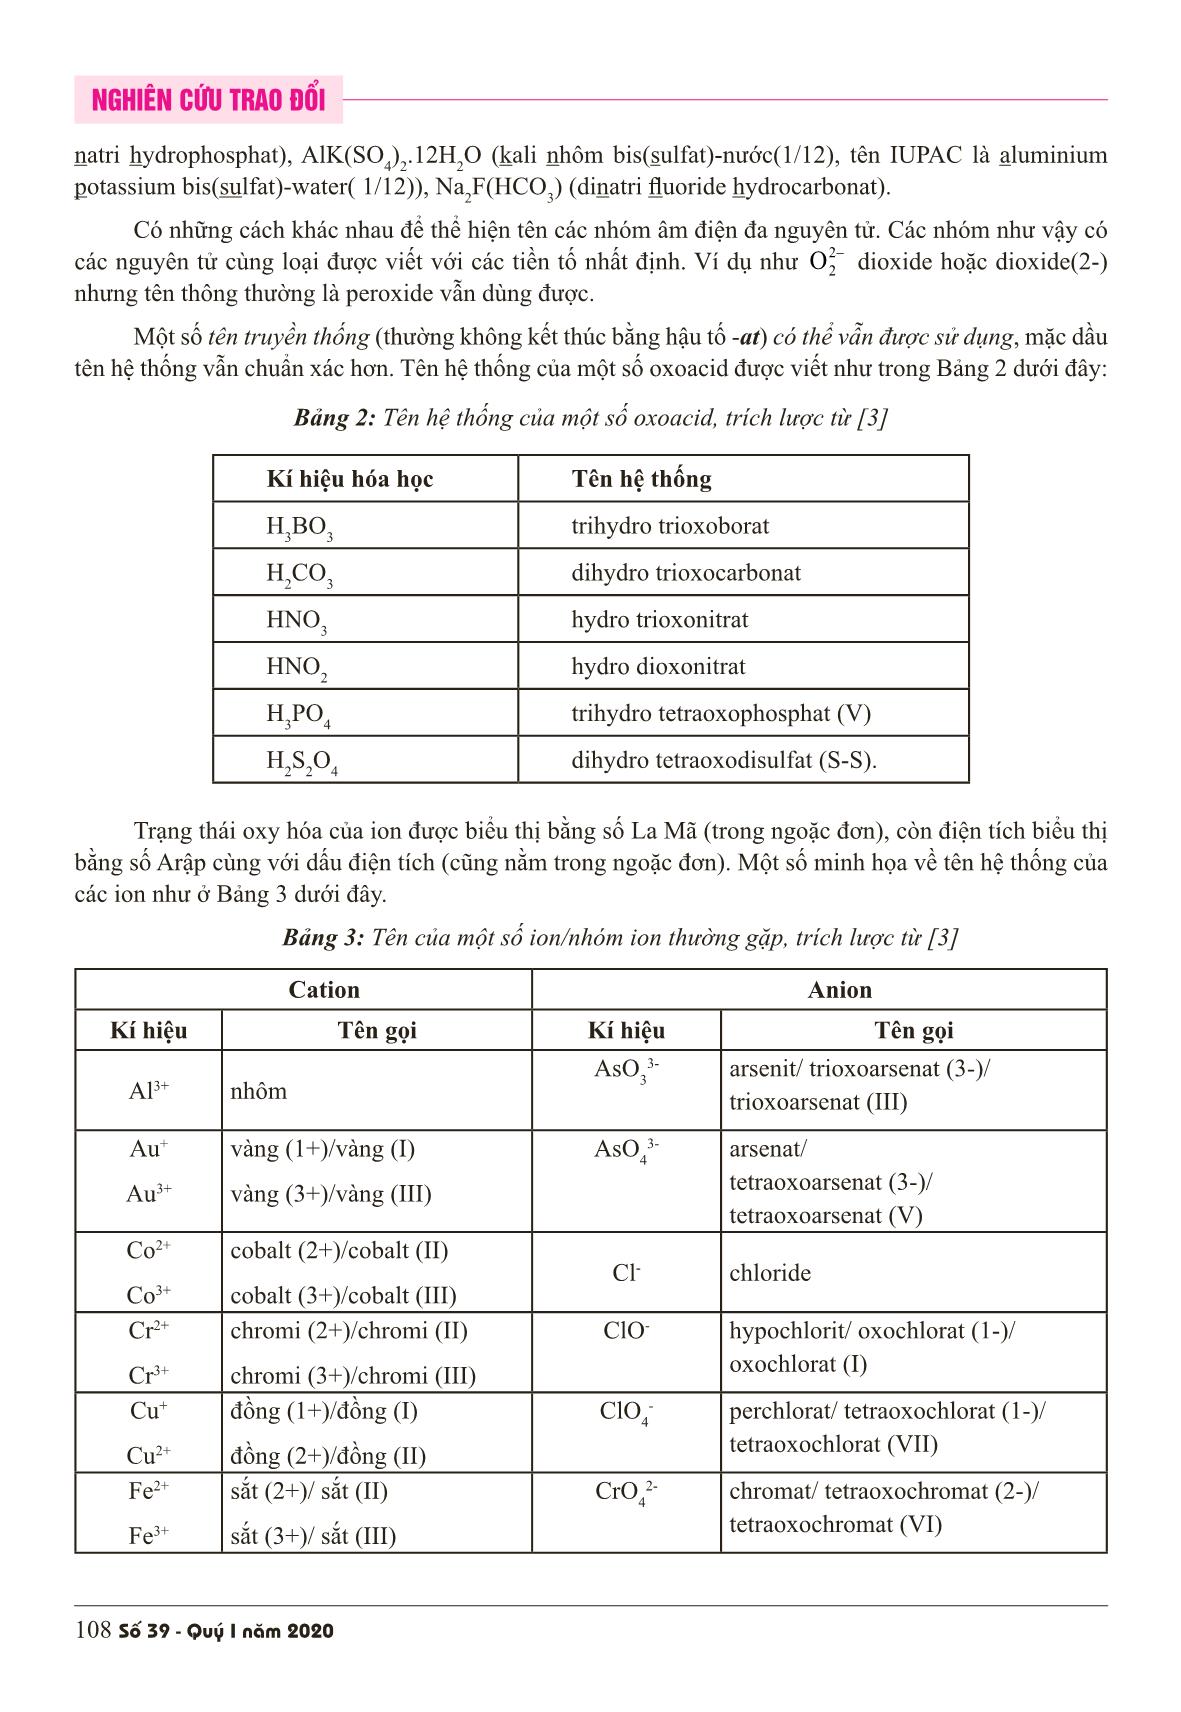 Áp dụng các quy tắc phiên chuyển và danh pháp iupac vào danh pháp hóa học Việt Nam trang 6